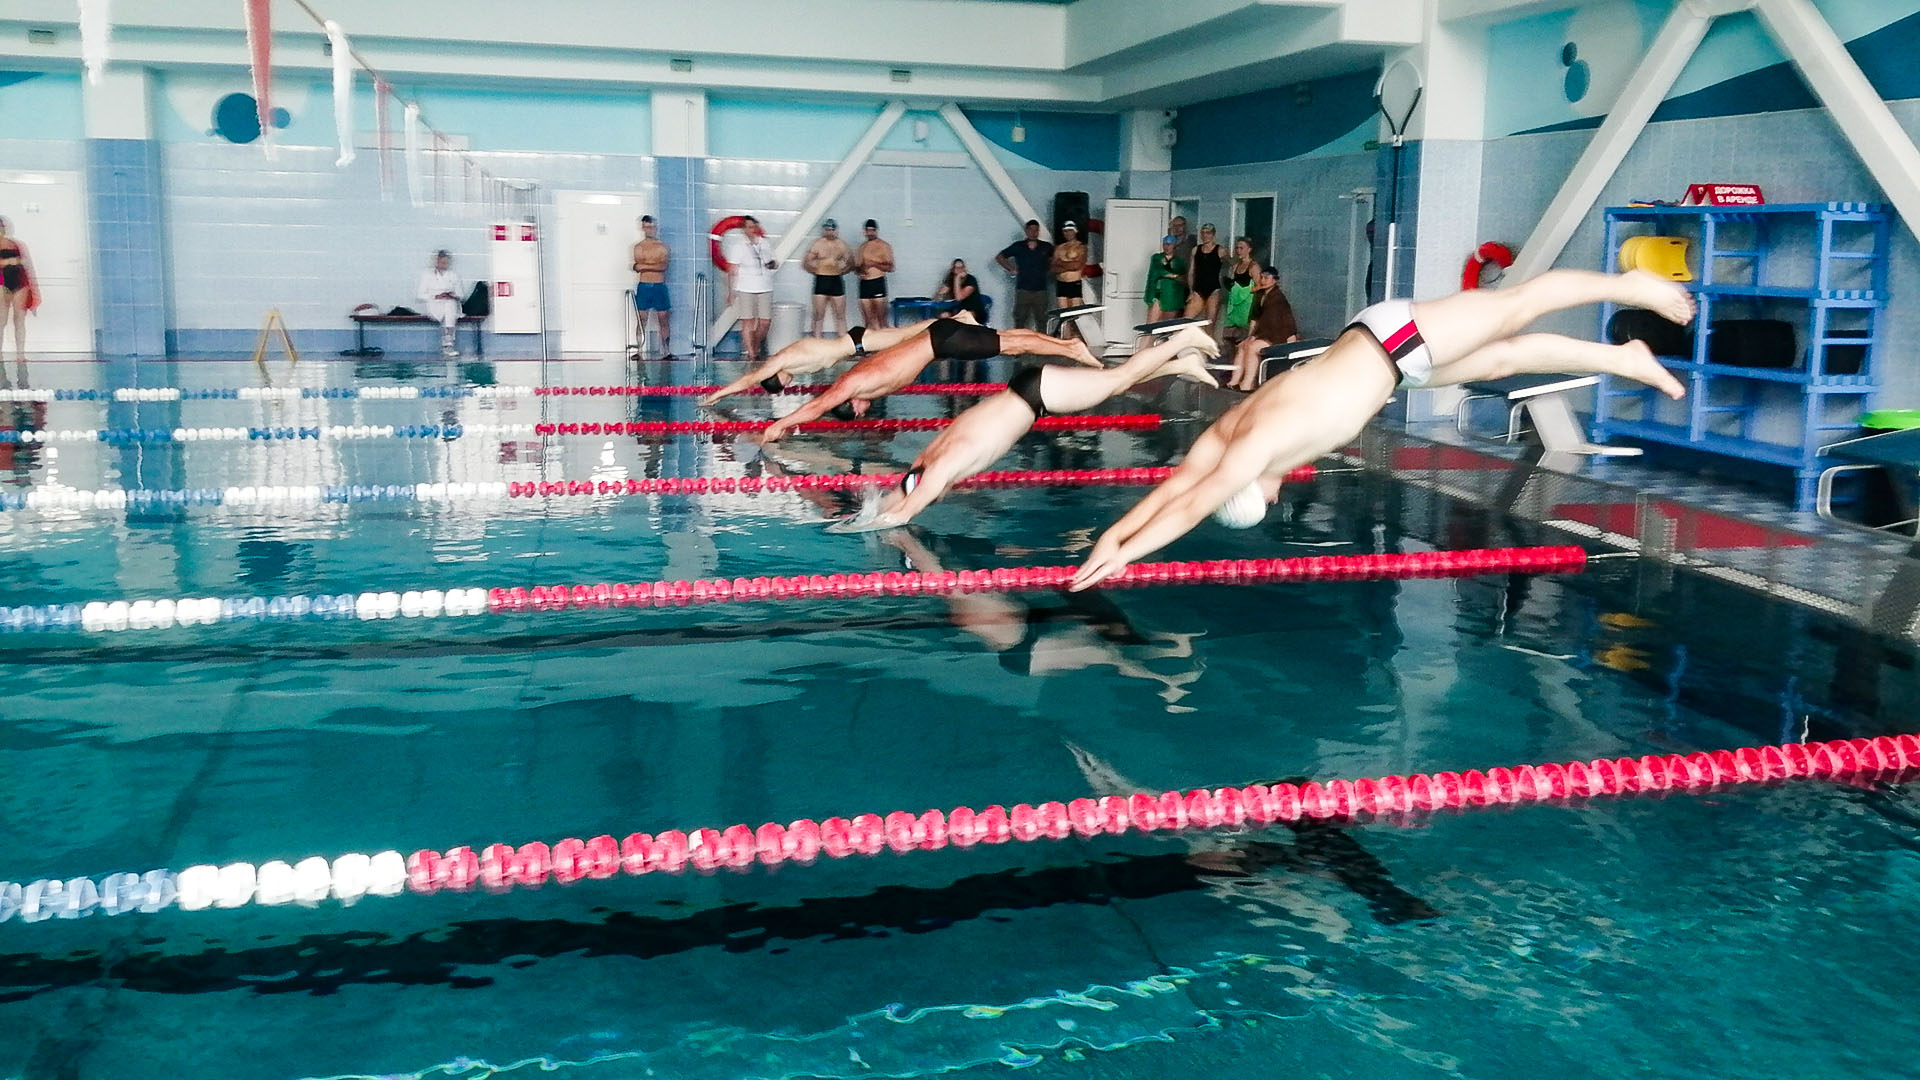 Полицейские и пожарные показали лучшие результаты на «динамовских» соревнованиях по плаванию